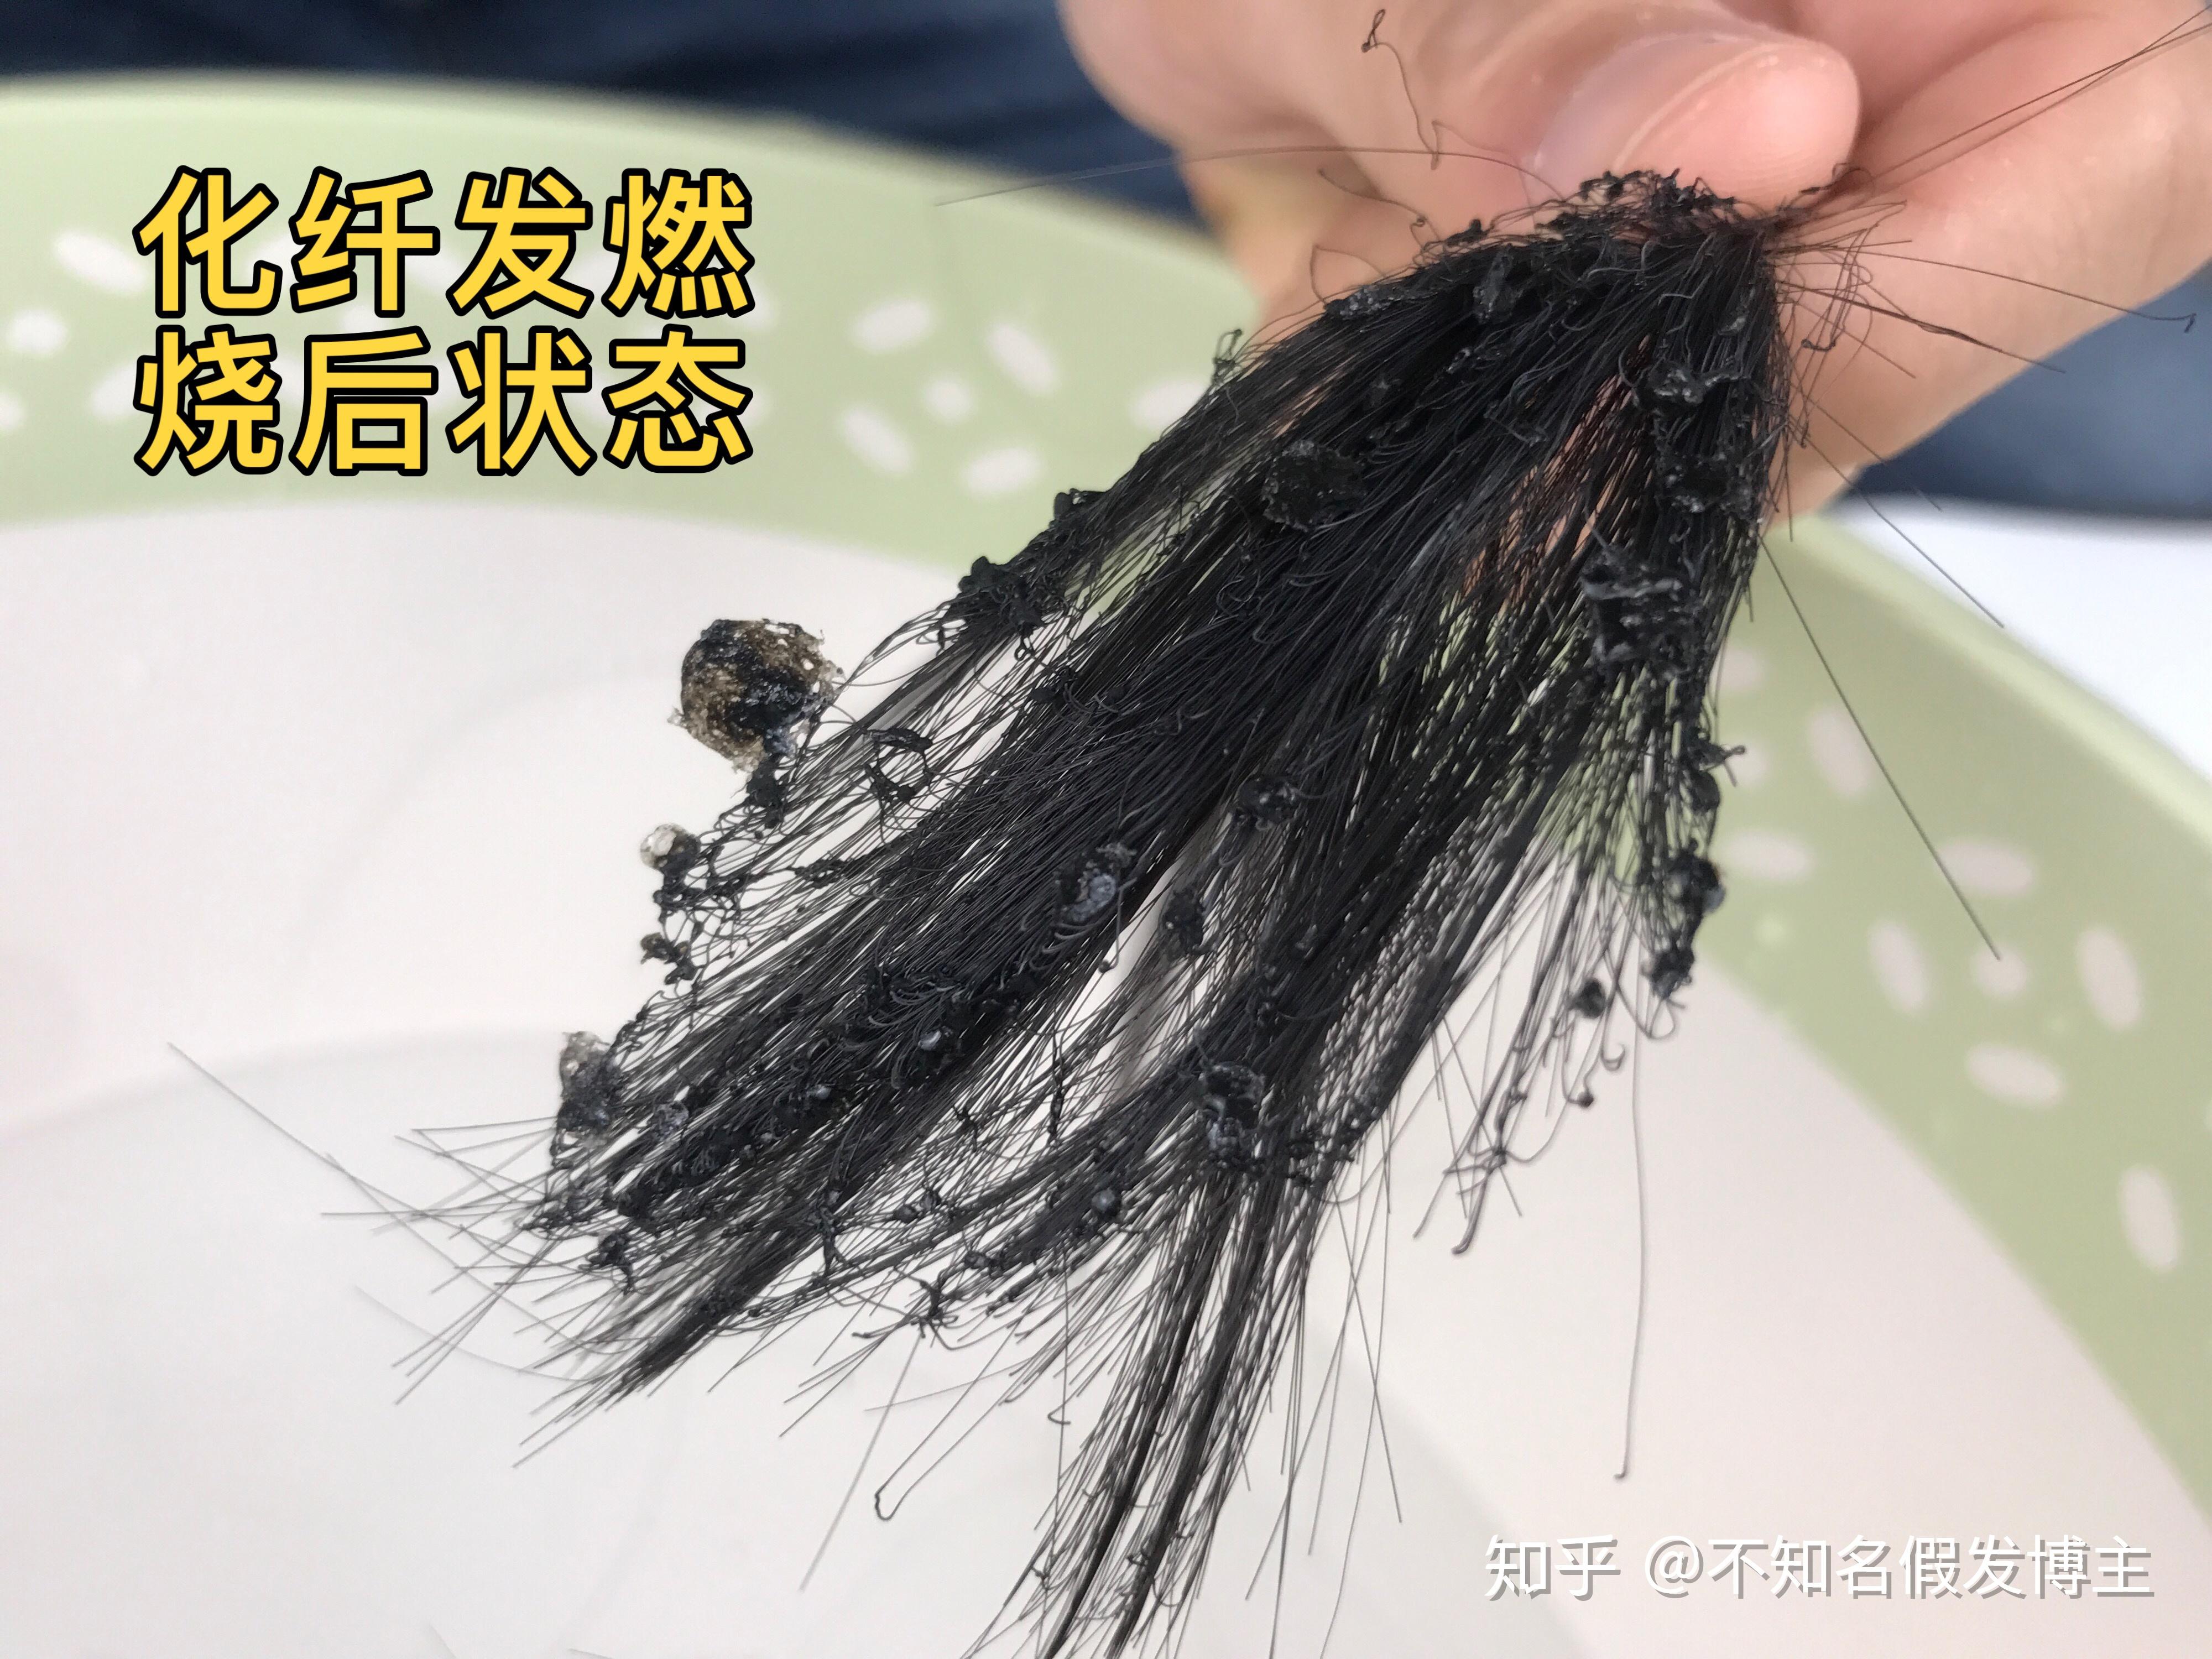 如果是掺了化纤丝的真人发,点燃后会冒少量的黑烟,烧完的头发会有少量